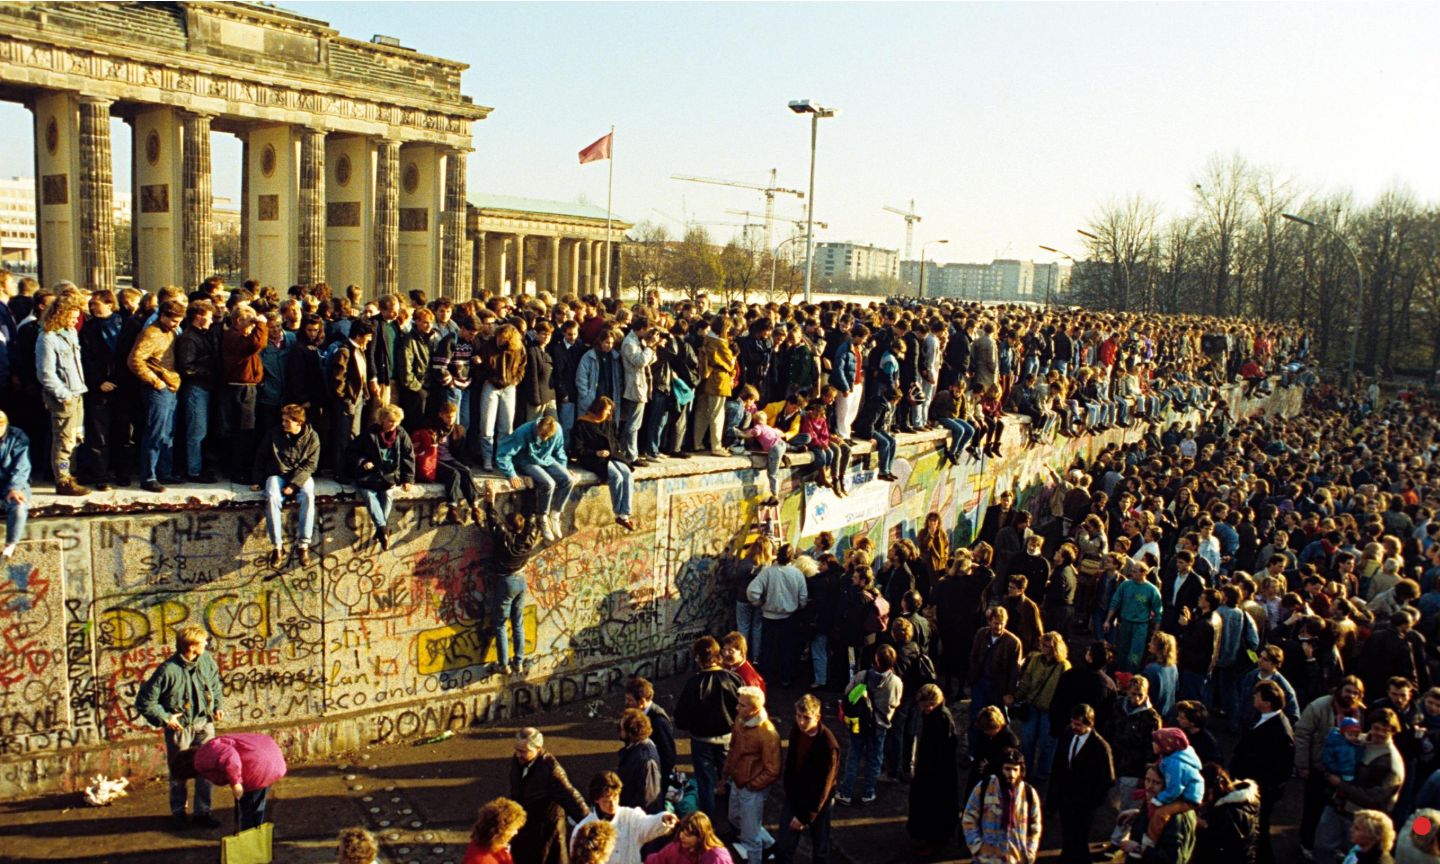 Открывается свободный проход граждан из Восточной в Западную часть Берлина - начинается разрушение "Берлинской стены"